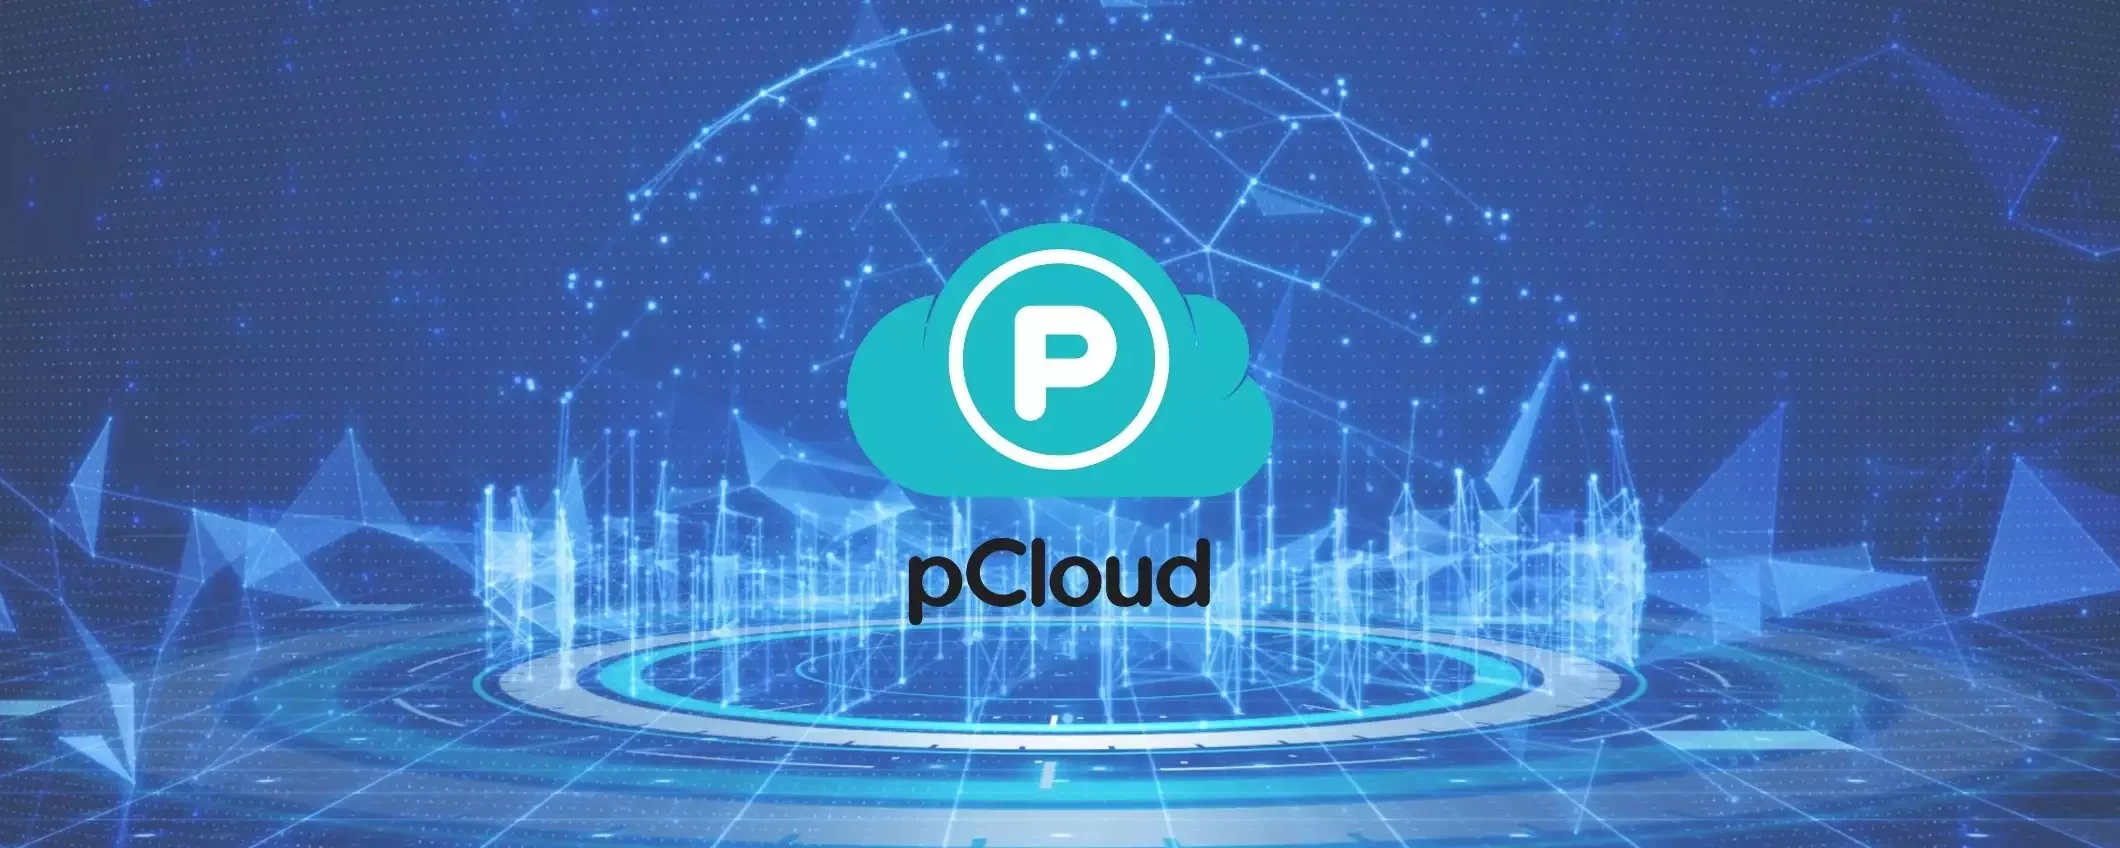 Cloud senza abbonamento: pCloud te lo offre al 37% di sconto